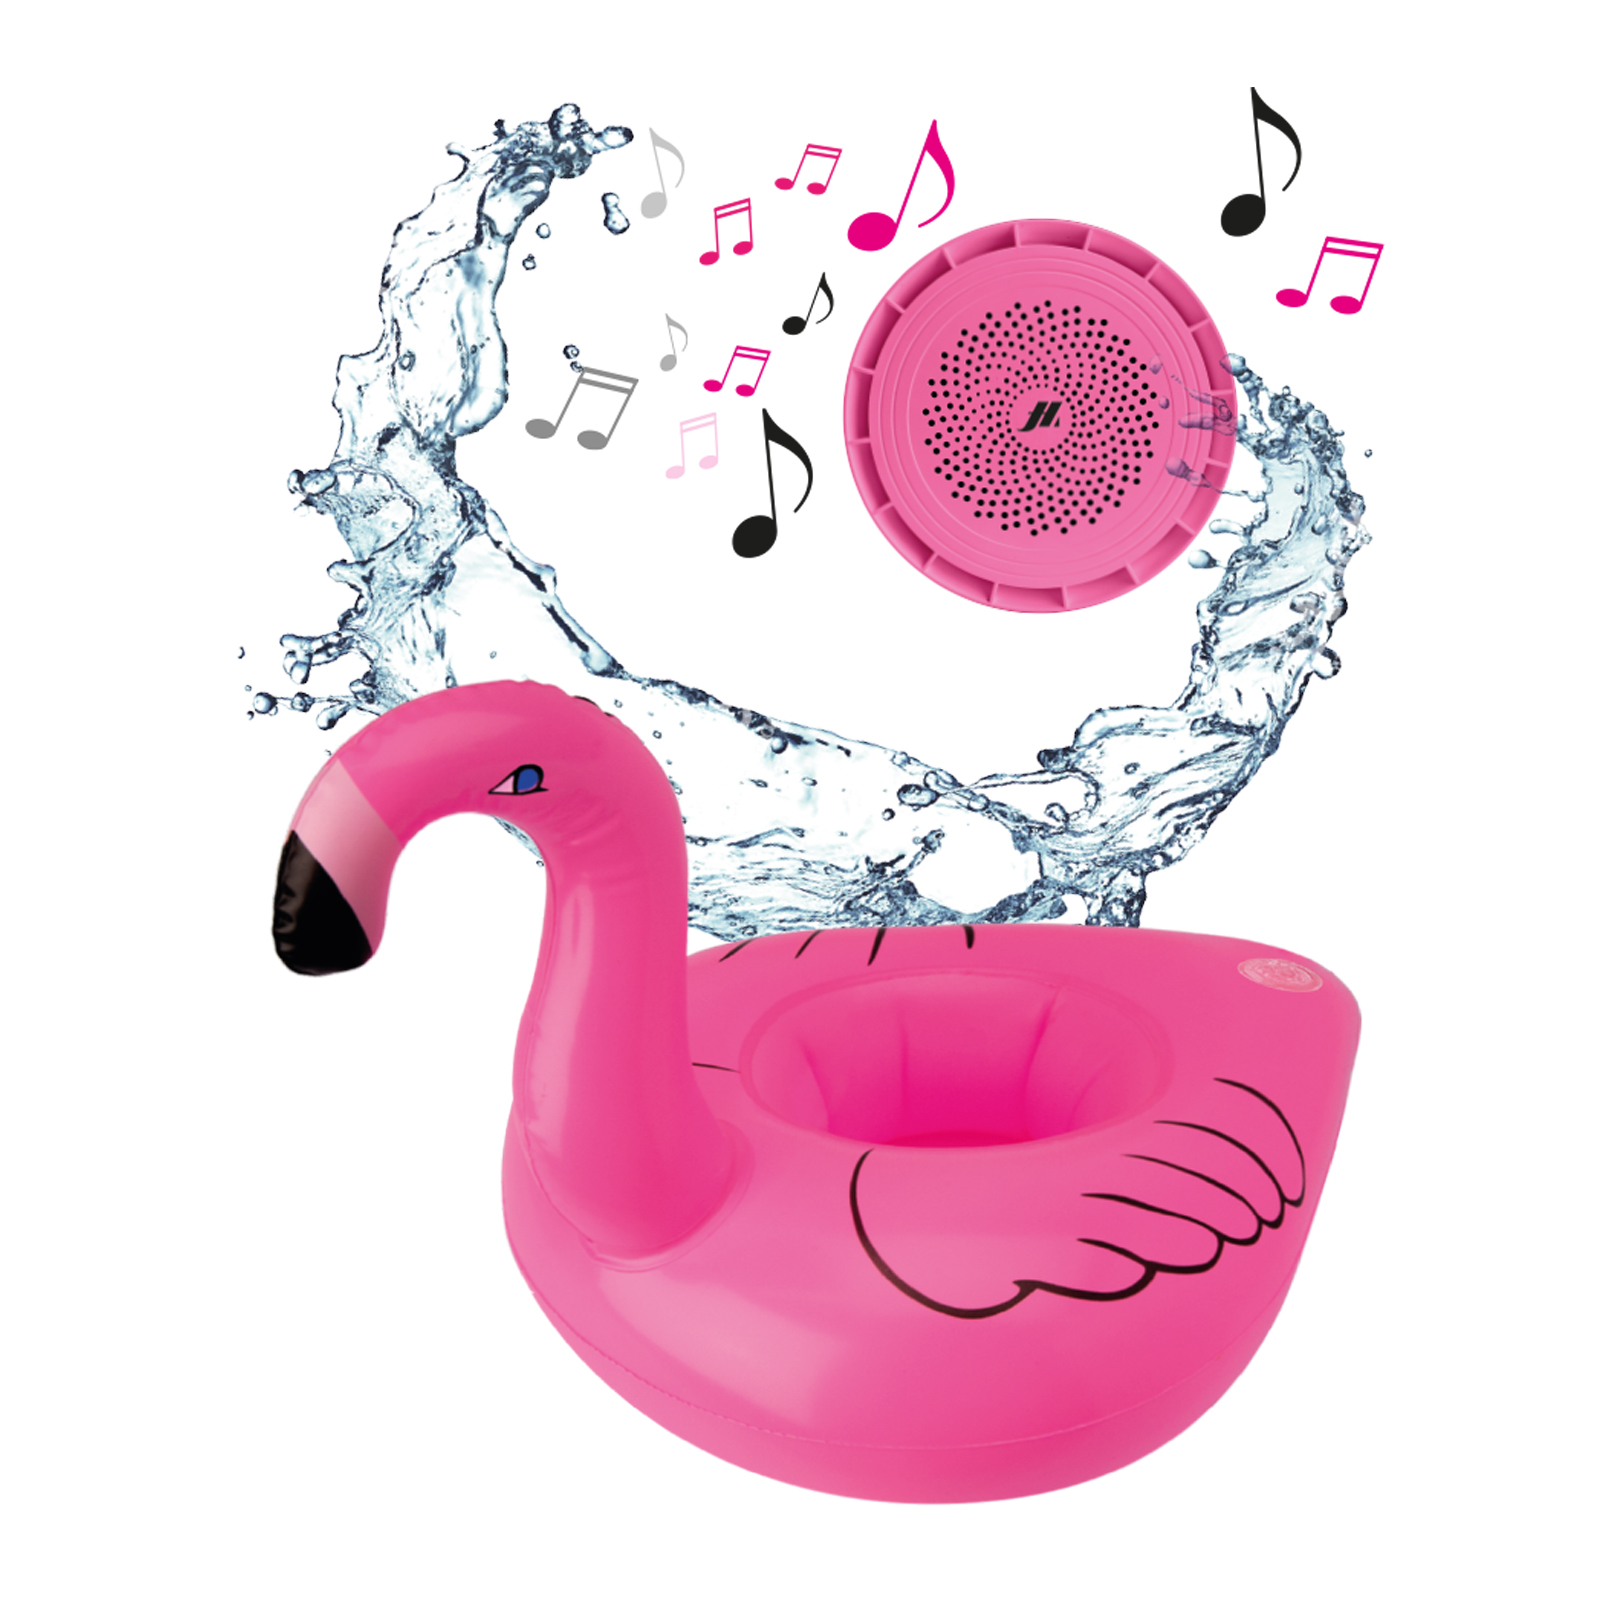 MH - Plávajúci b reproduktor, flamingo